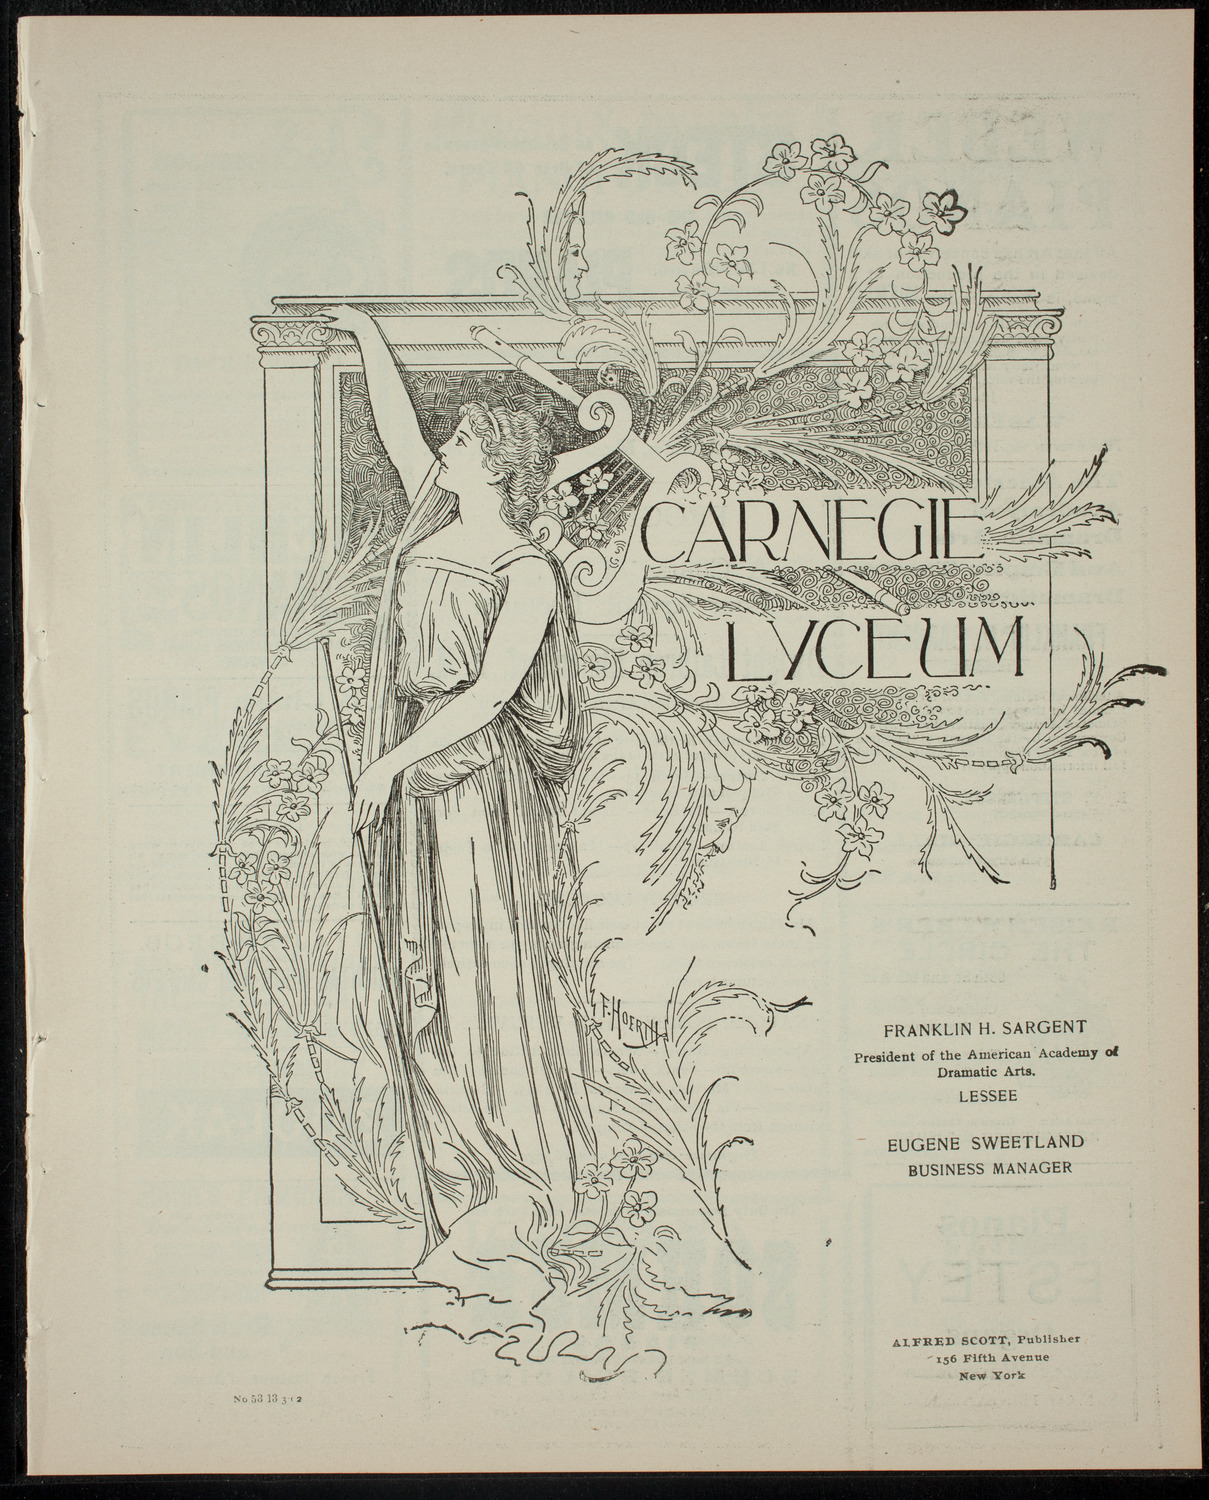 Elmendorf Lecture: Naples, Pompeii, and Vesuvius, March 13, 1902, program page 1